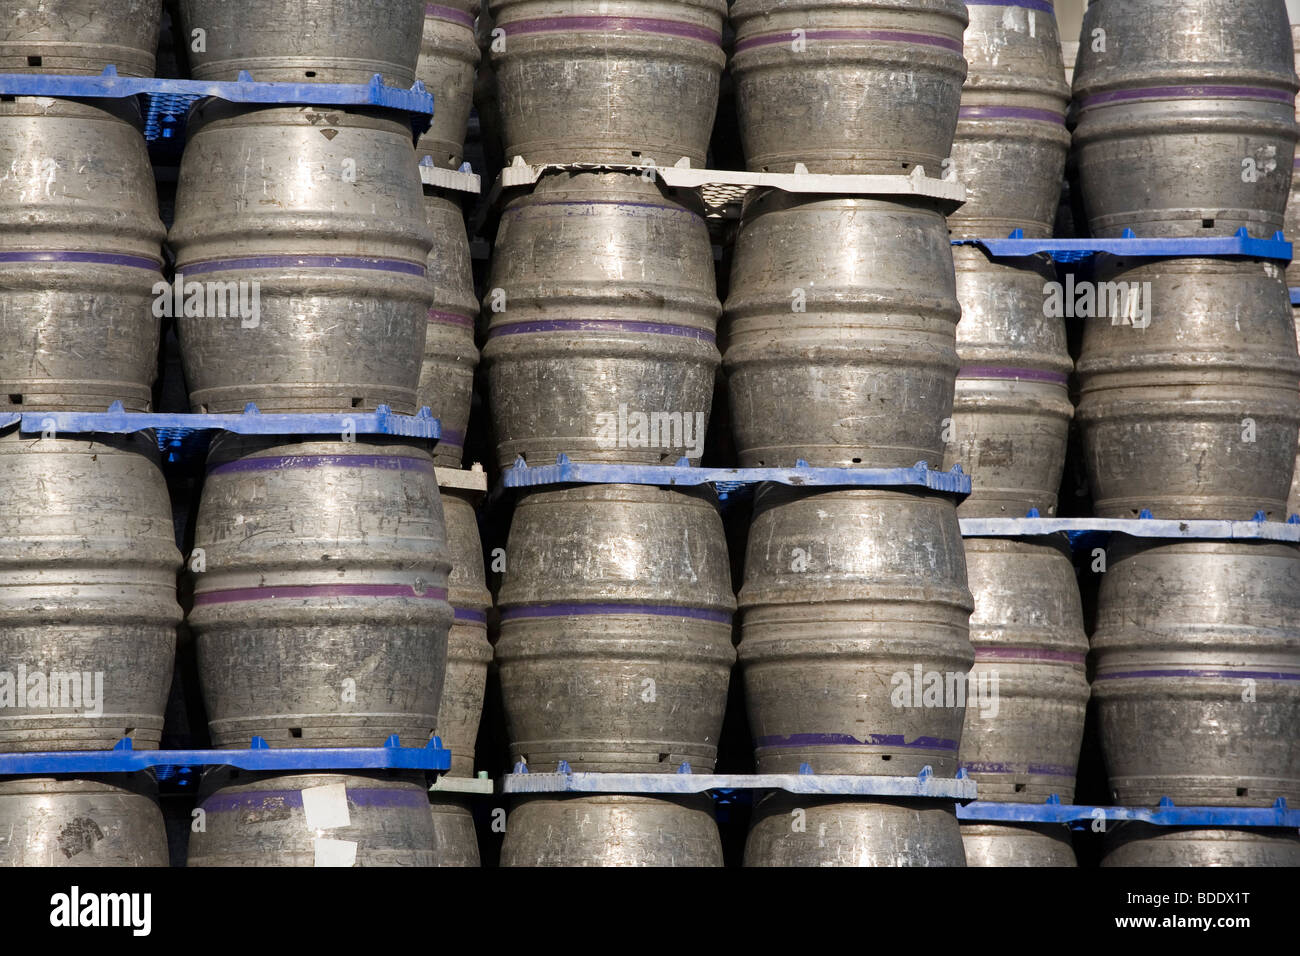 Beer kegs Stock Photo